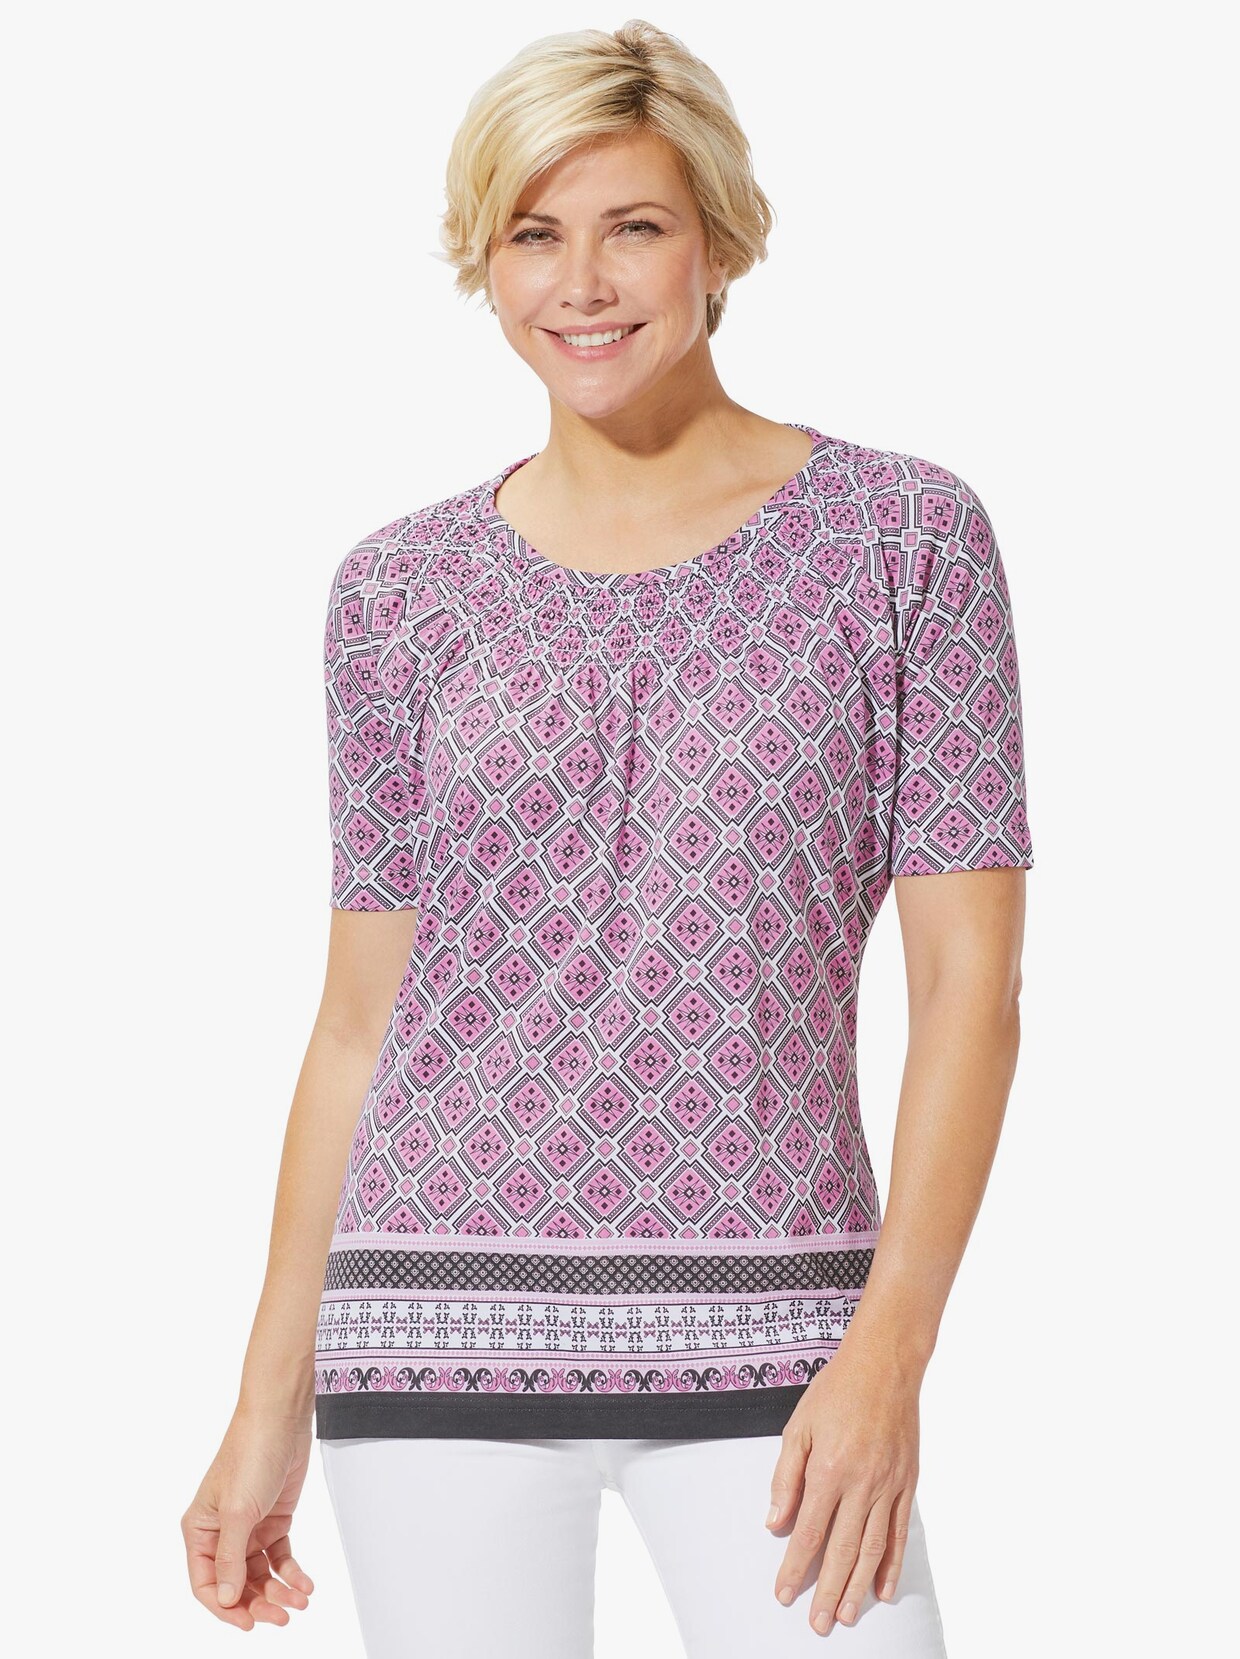 Tričko s krátkymi rukávmi - Ružový vzor